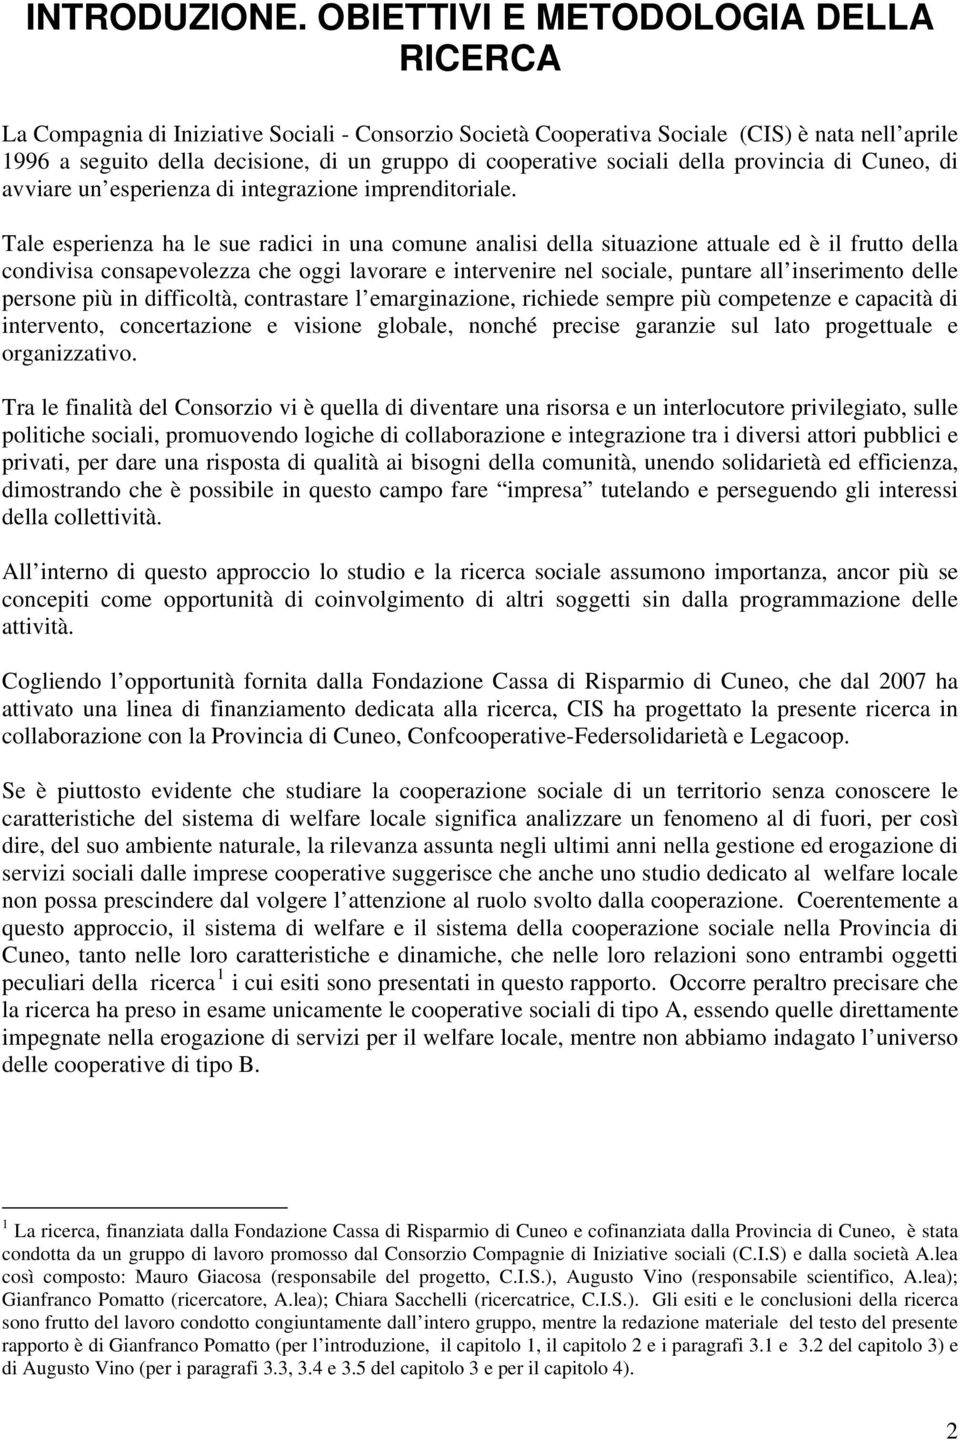 sociali della provincia di Cuneo, di avviare un esperienza di integrazione imprenditoriale.